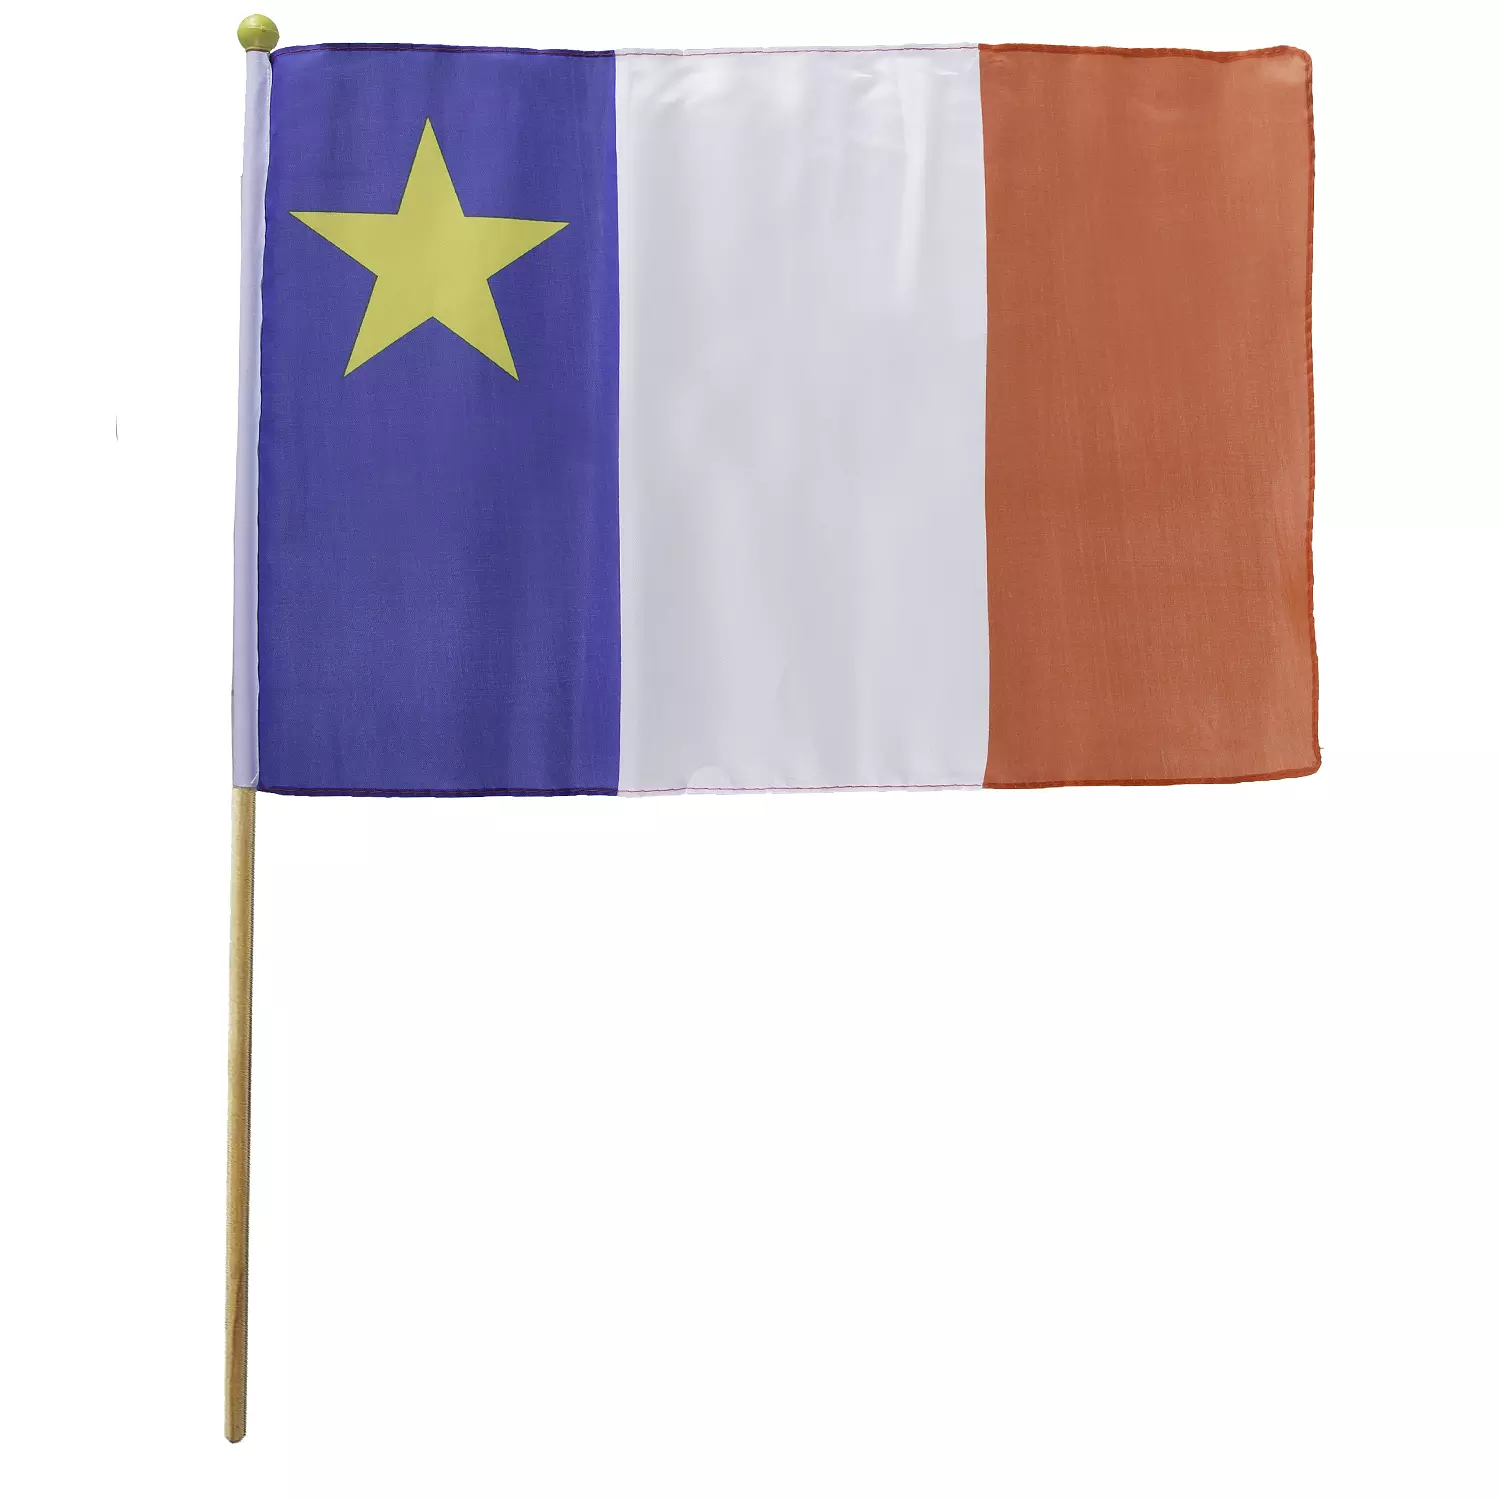 Acadie flag, 12"x18"